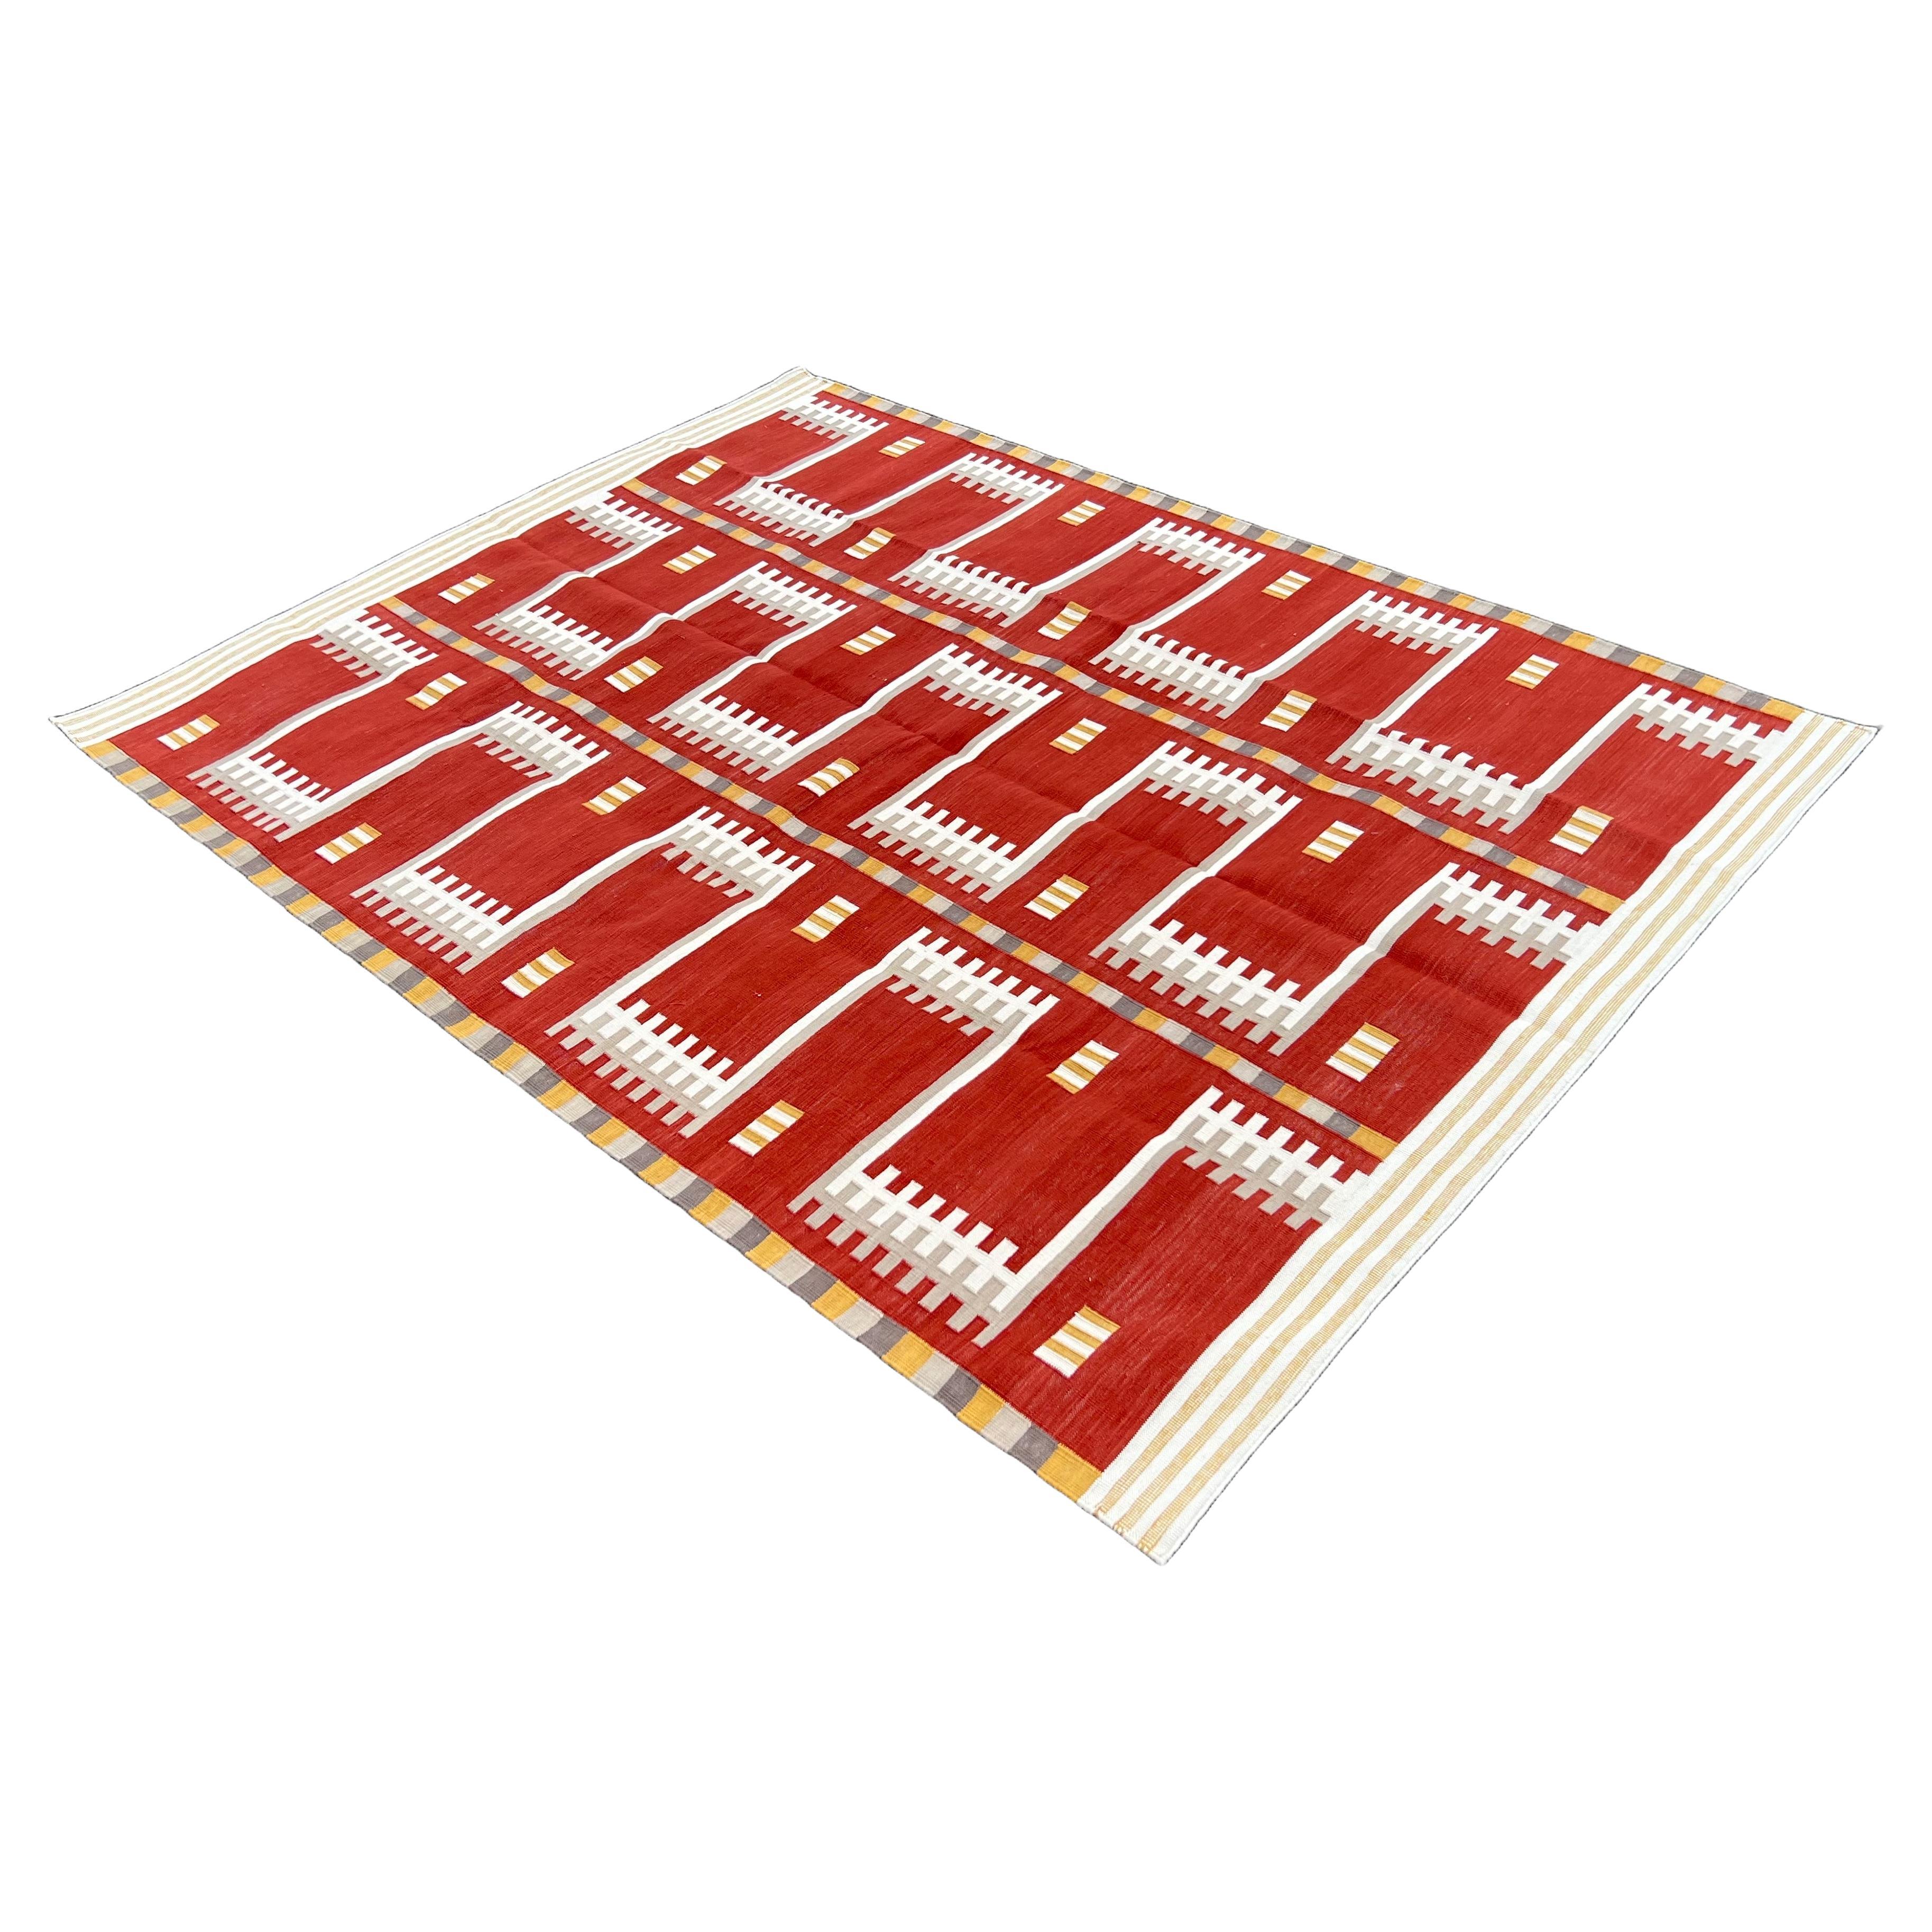 Pflanzlich gefärbte Baumwolle, Terrakotta Rot, Creme & Beige Geometrischer Indischer Dhurrie-5'x7'
Diese speziellen flachgewebten Dhurries werden aus 15-fachem Garn aus 100% Baumwolle handgewebt. Aufgrund der speziellen Fertigungstechniken, die zur